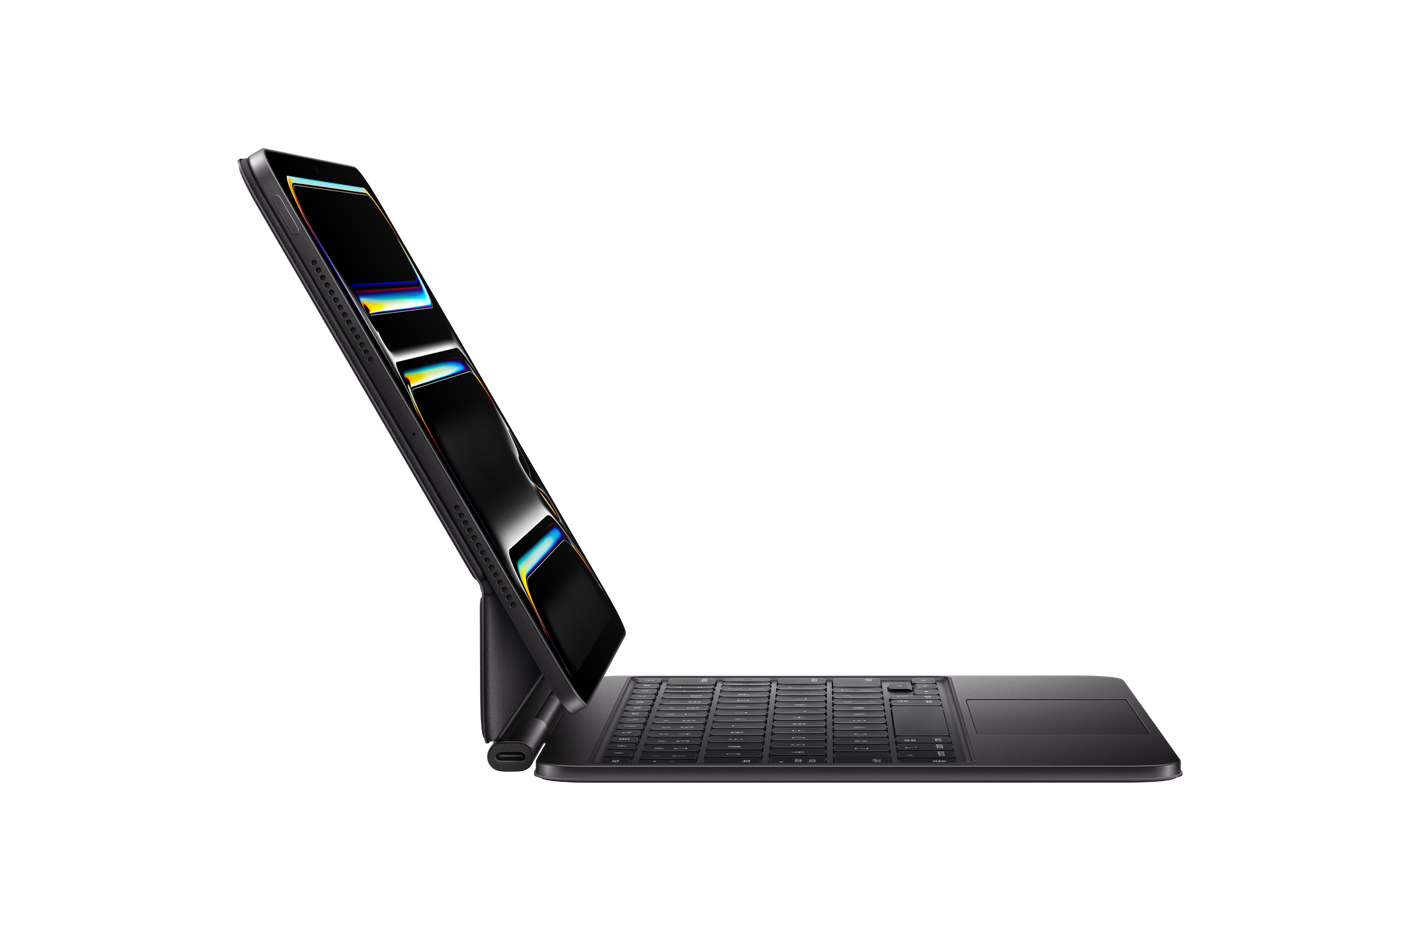 Magic Keyboard’a takılı, yatay pozisyonda iPad Pro’nun yandan görünümü, Siyah, yan kısmı arkaya yatırılmış, katlama kısmının yakınında şarj bağlantı noktası, askı modeli tasarımı